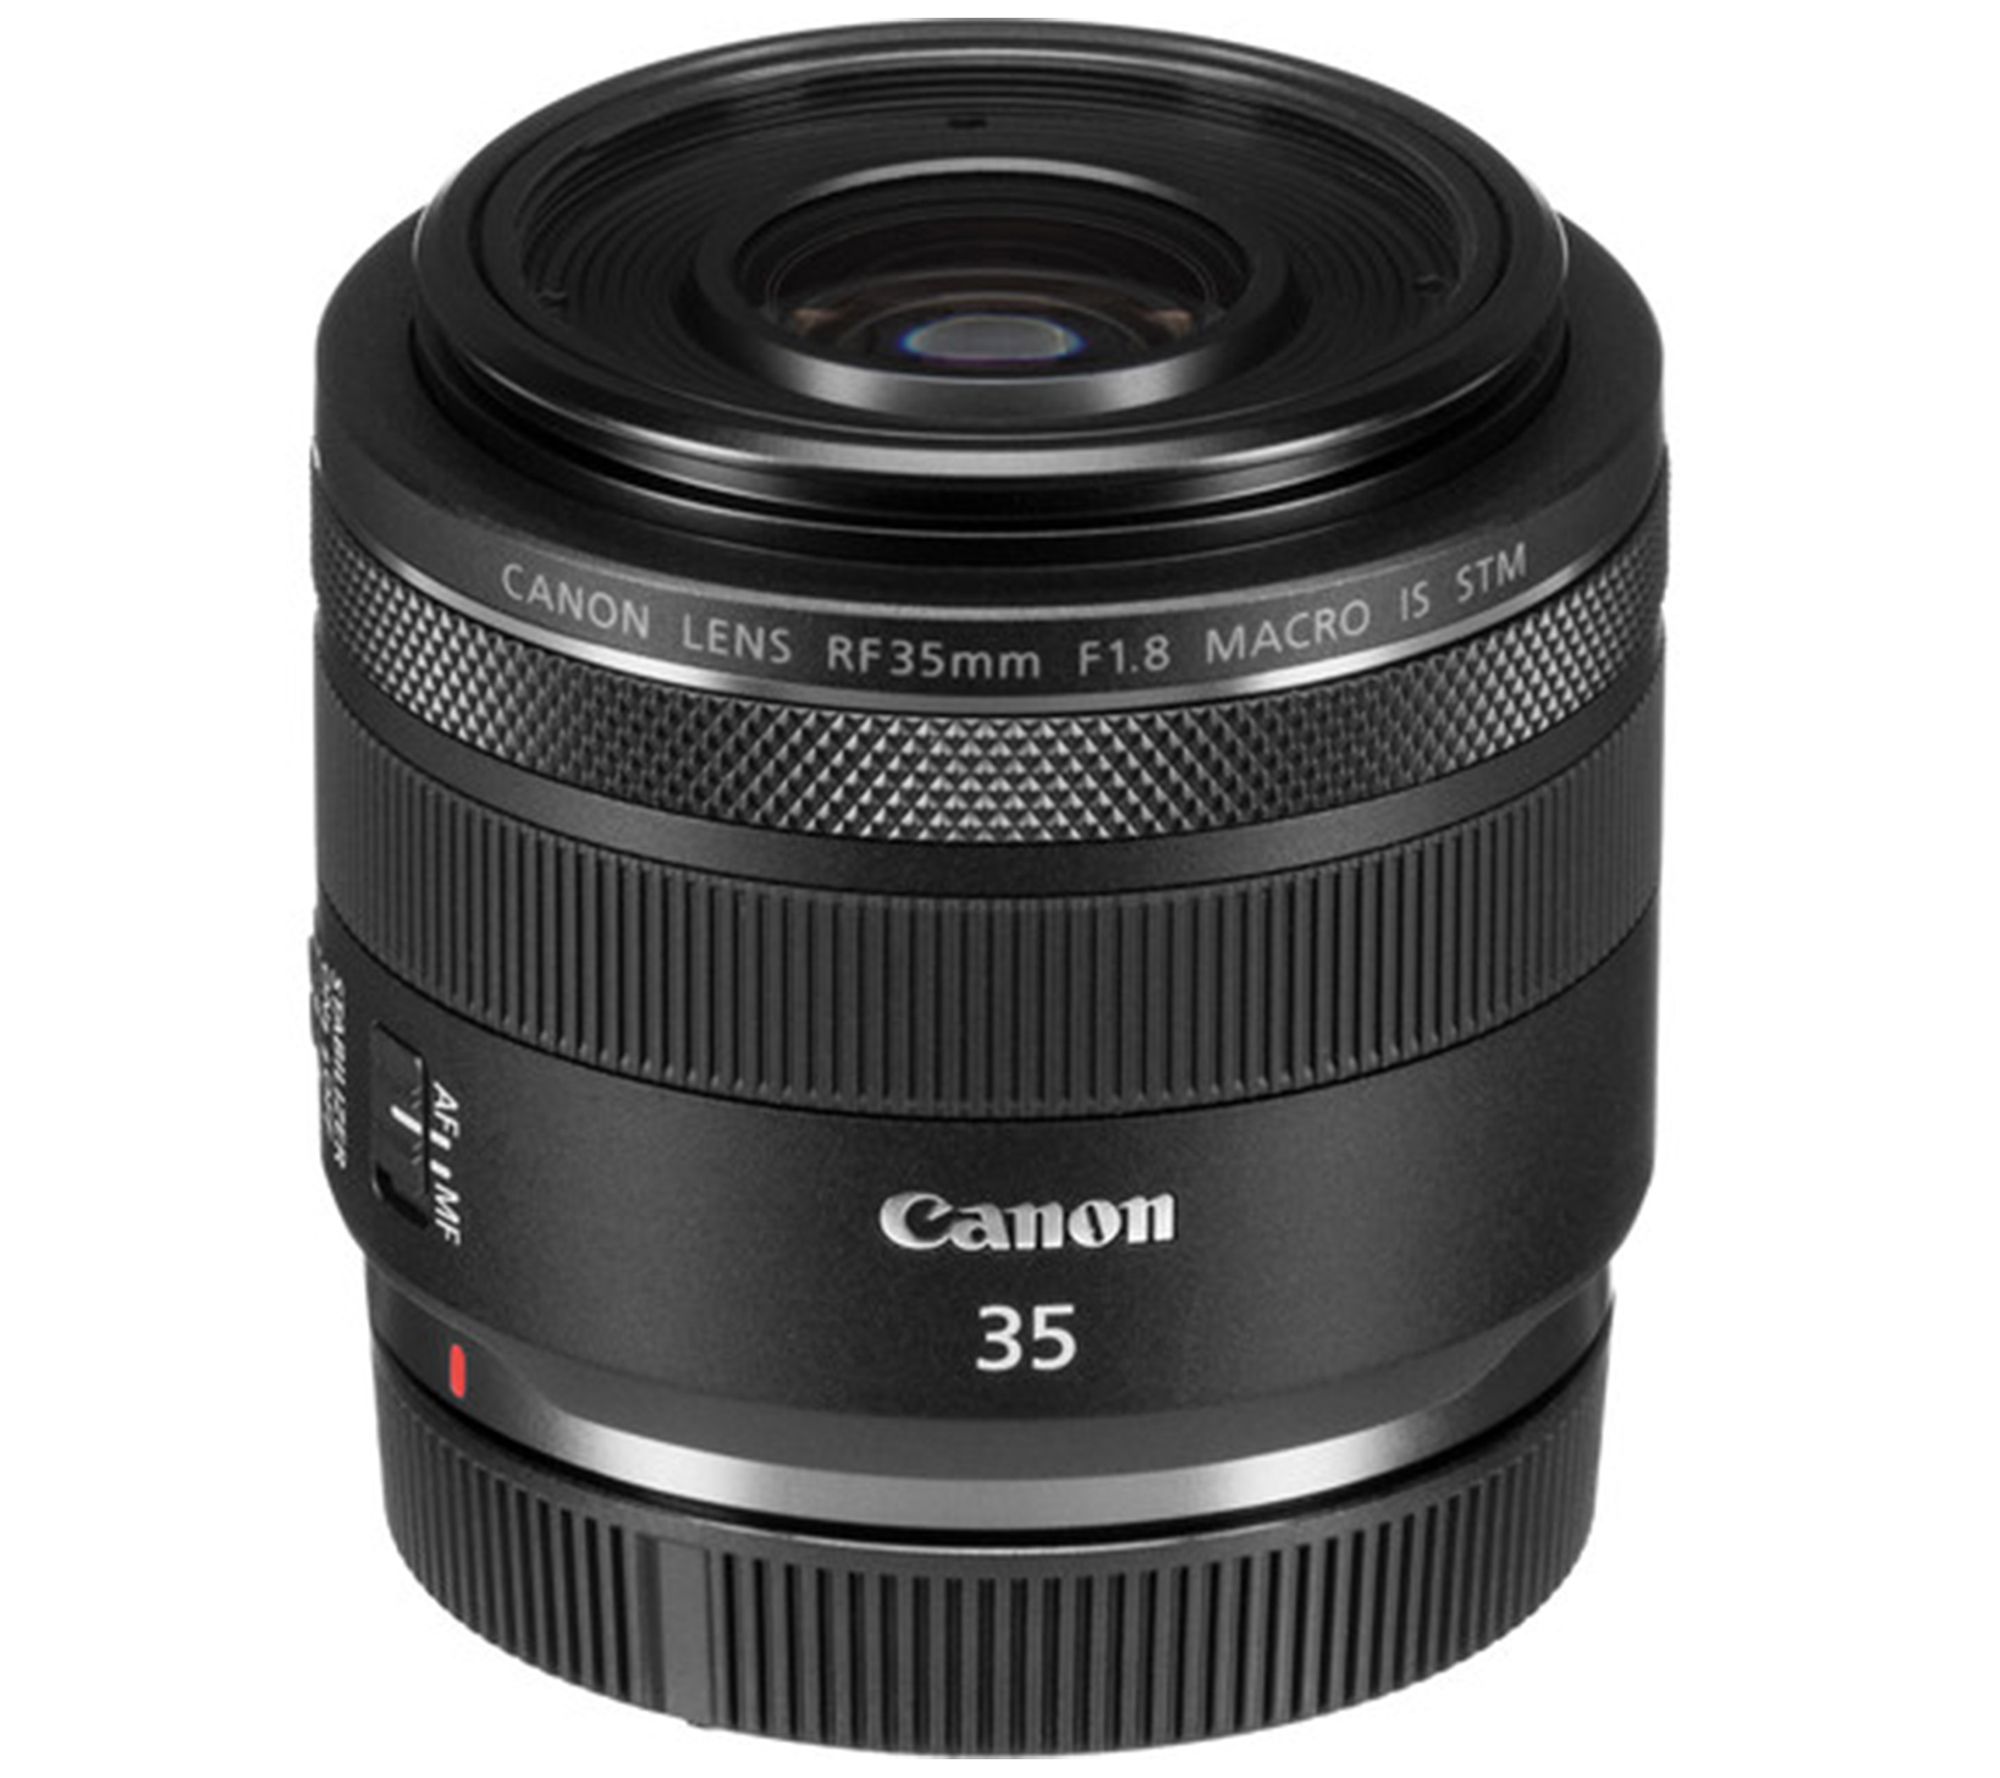 Canon Cameras u0026 Lenses | Canon DSLR u0026 Digital Cameras - QVC.com